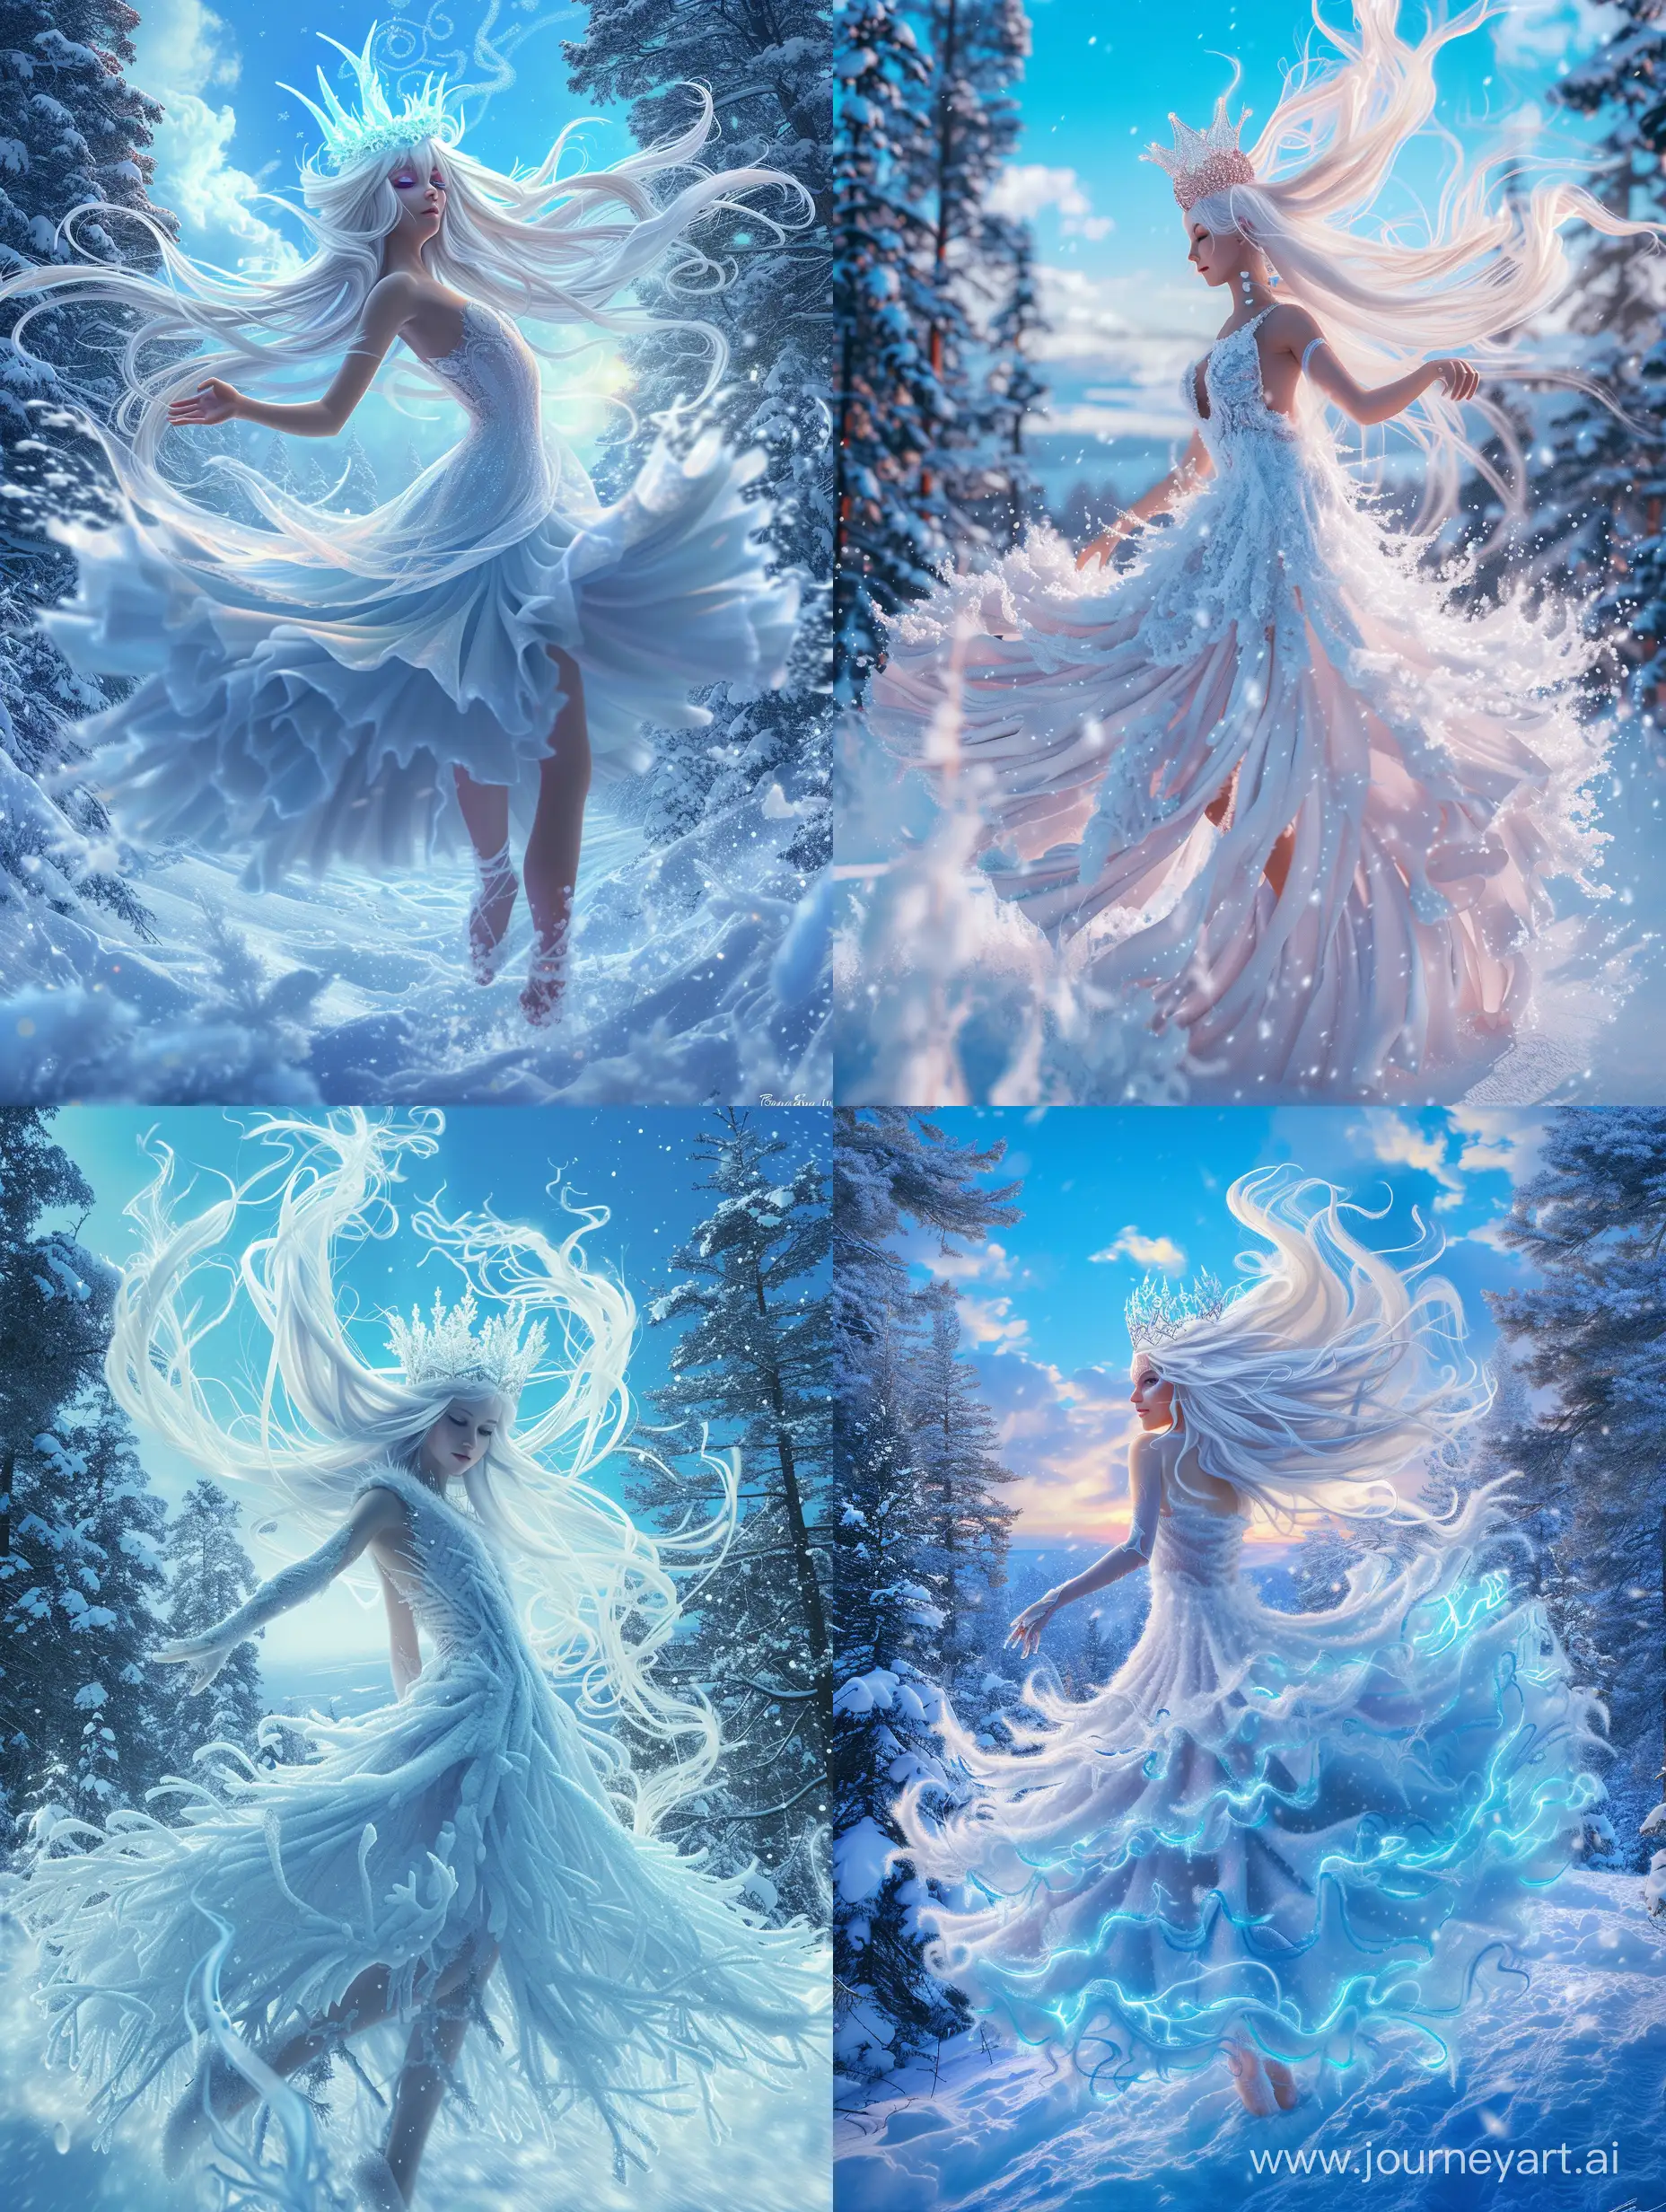 Королева-зима, невероятно красивая девушка в полный рост, с белыми длинными волосами, на голове корона из льда, в платье из снега танцует в зимнем лесу, красивый пейзаж на фоне, синее небо, заснеженные деревья, продолжение платья из снега, вьюга завихряются у подола платья, неоновые переливы, высокое разрешение, эстетично, красиво, яркое освещение, фотореализм